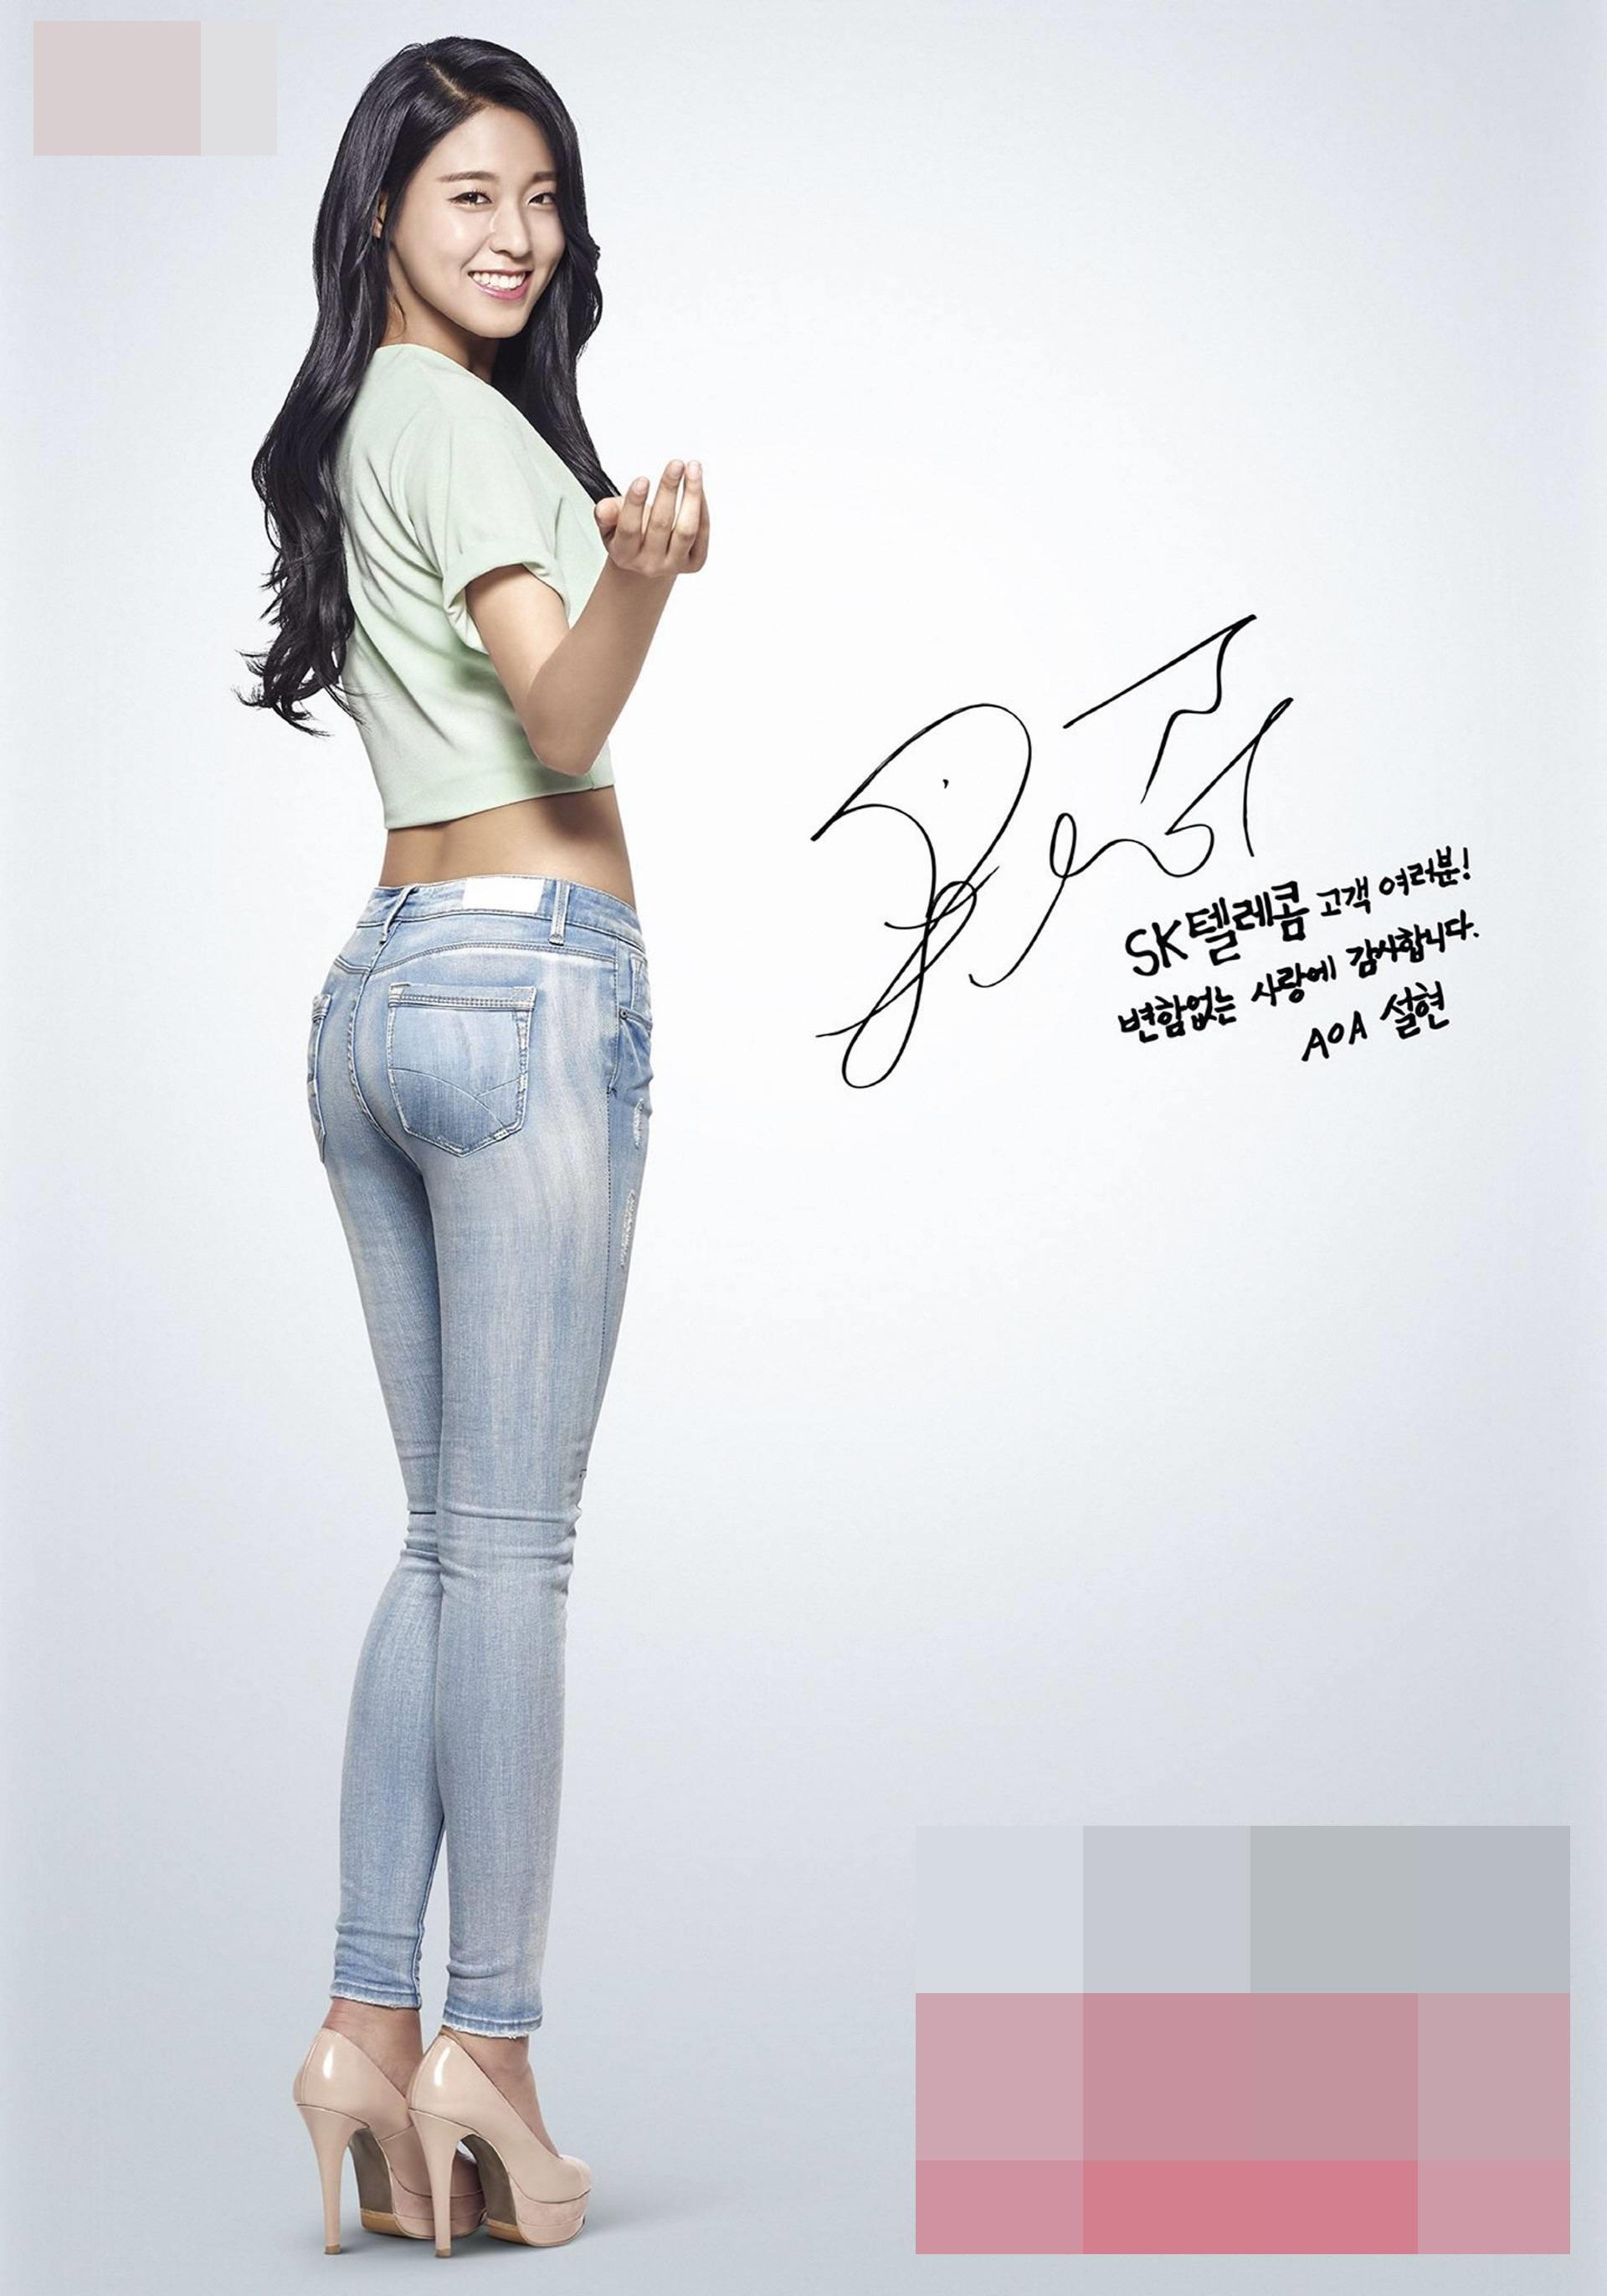 Ngắm body hoàn hảo của nữ thần sexy Seolhyun để thấy giảm béo khó mấy cũng phải làm-8